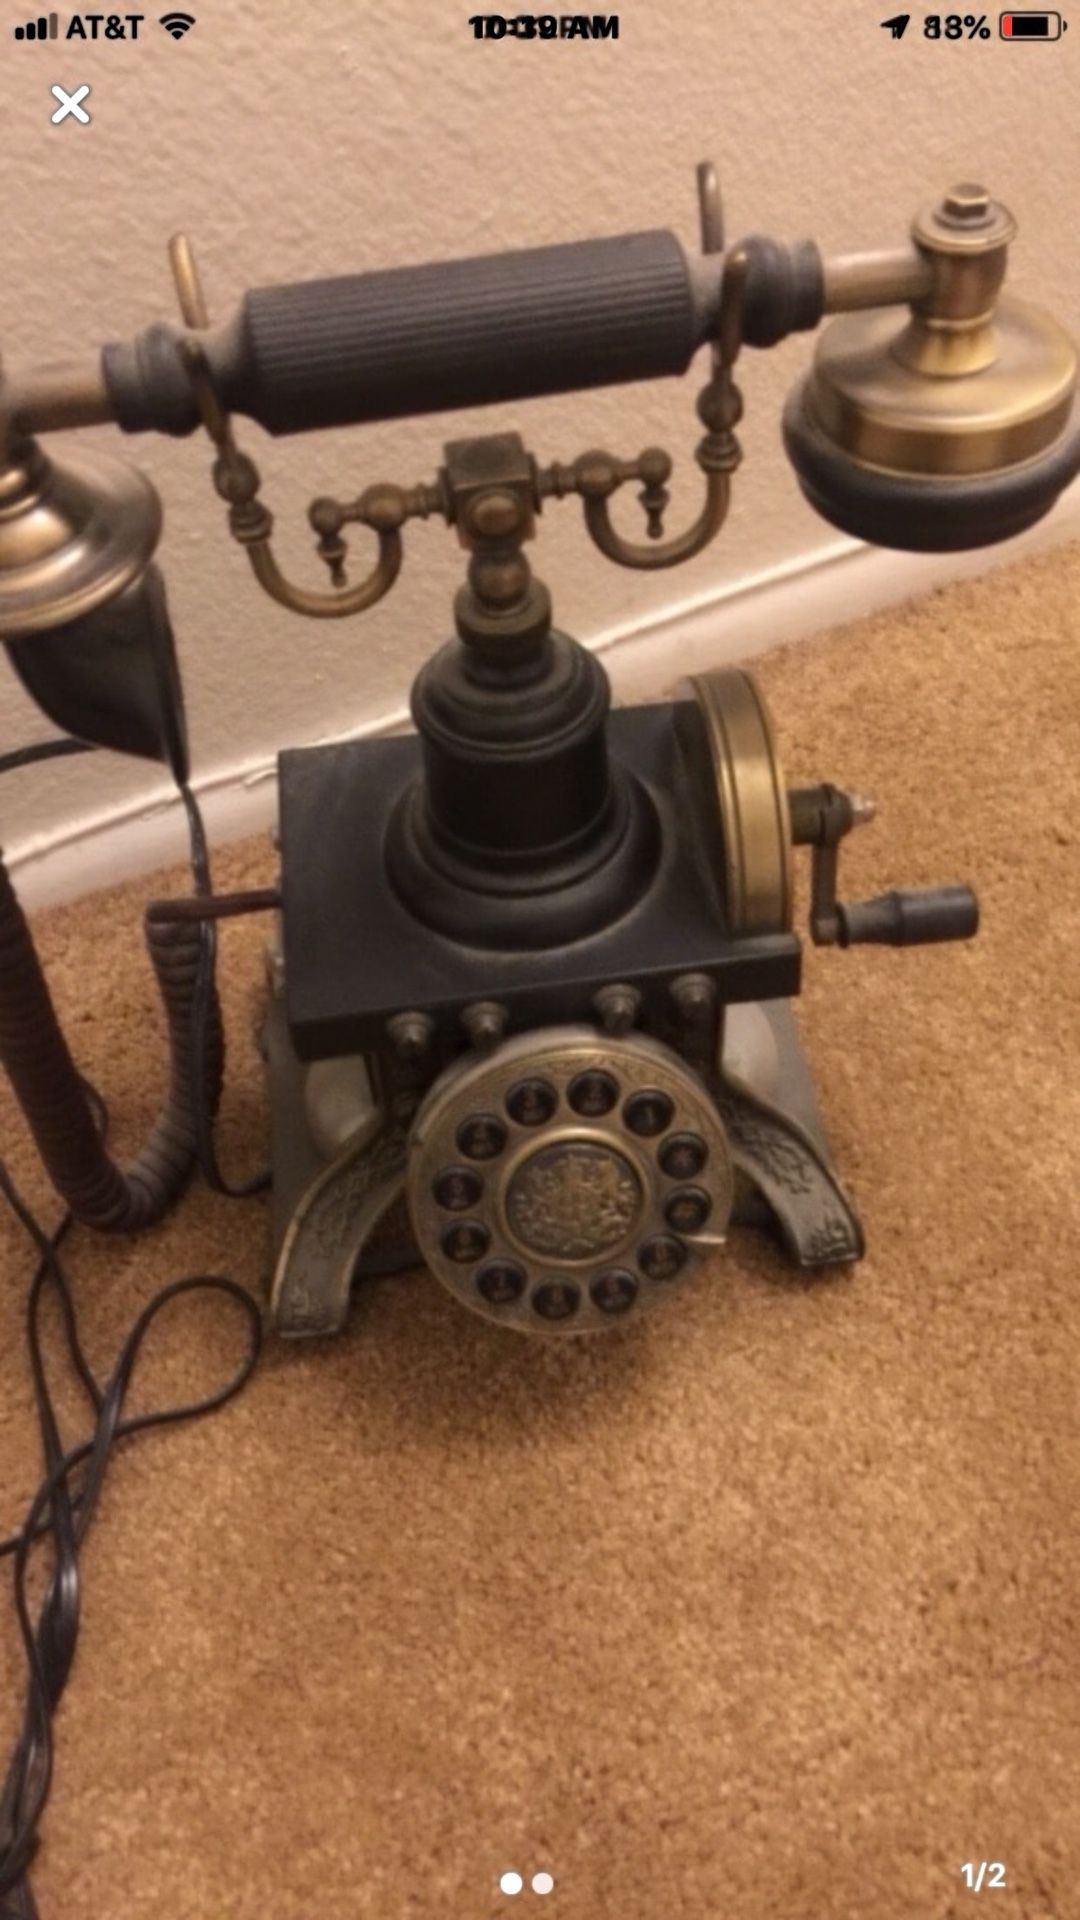 Telephone antique